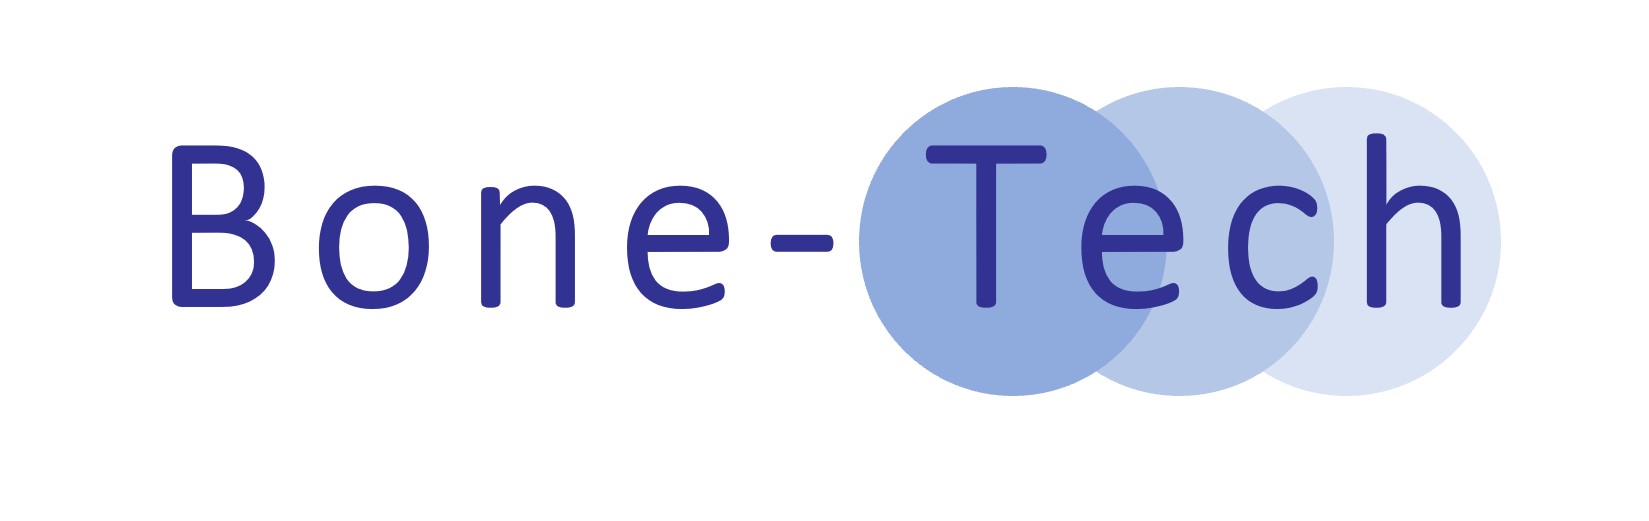 Bone-Tech logo